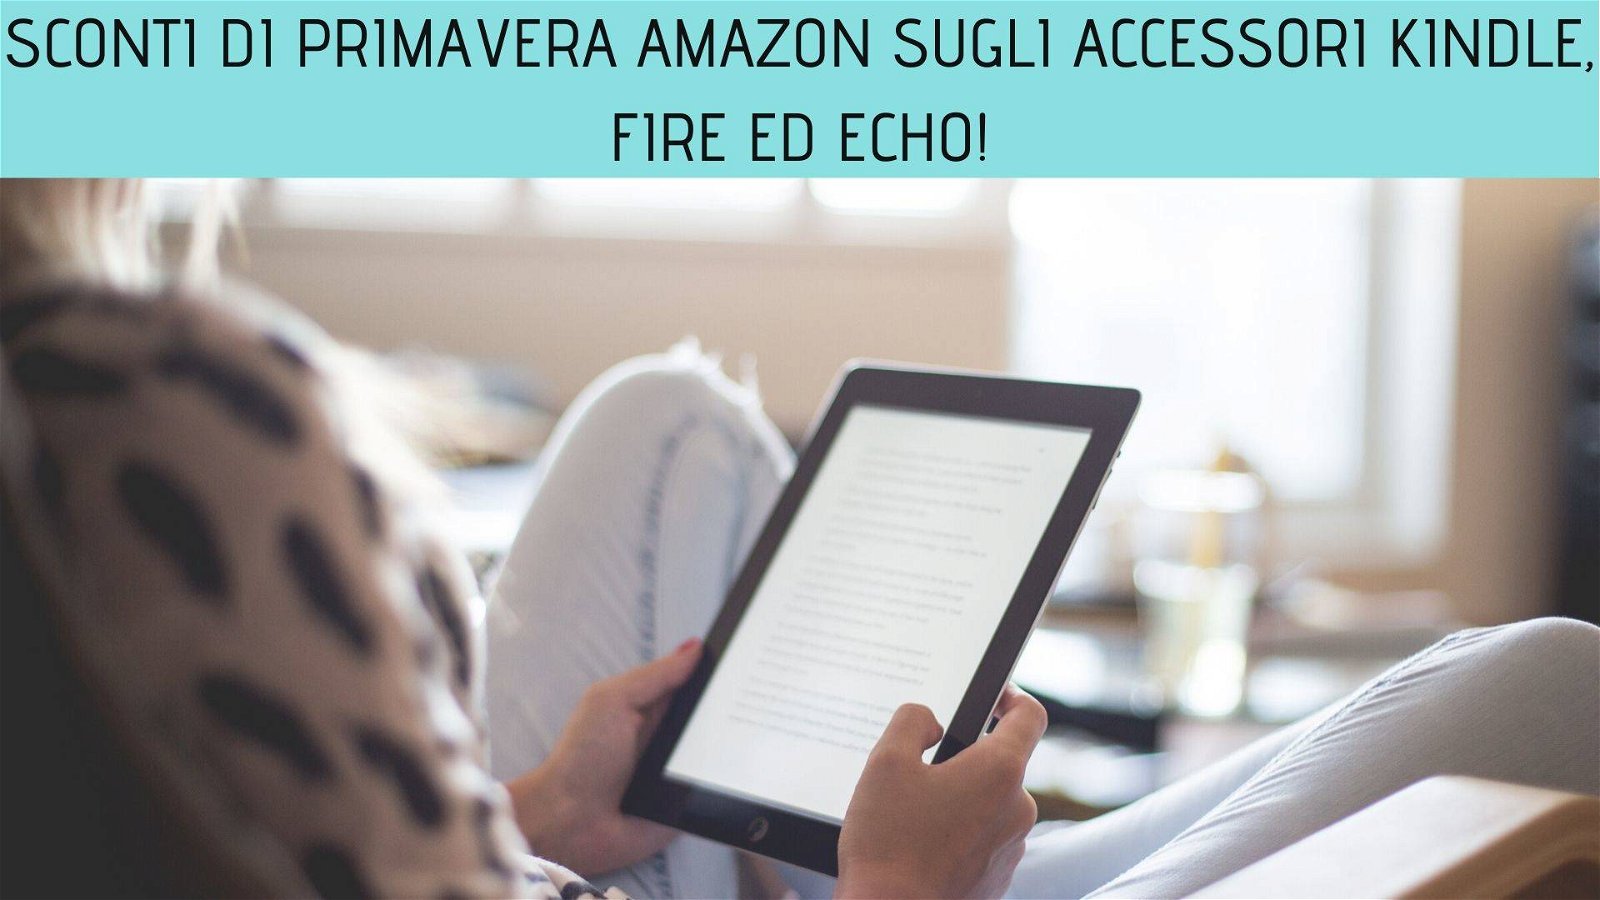 Immagine di Sconti di Primavera Amazon sugli accessori Kindle, Fire ed Echo!